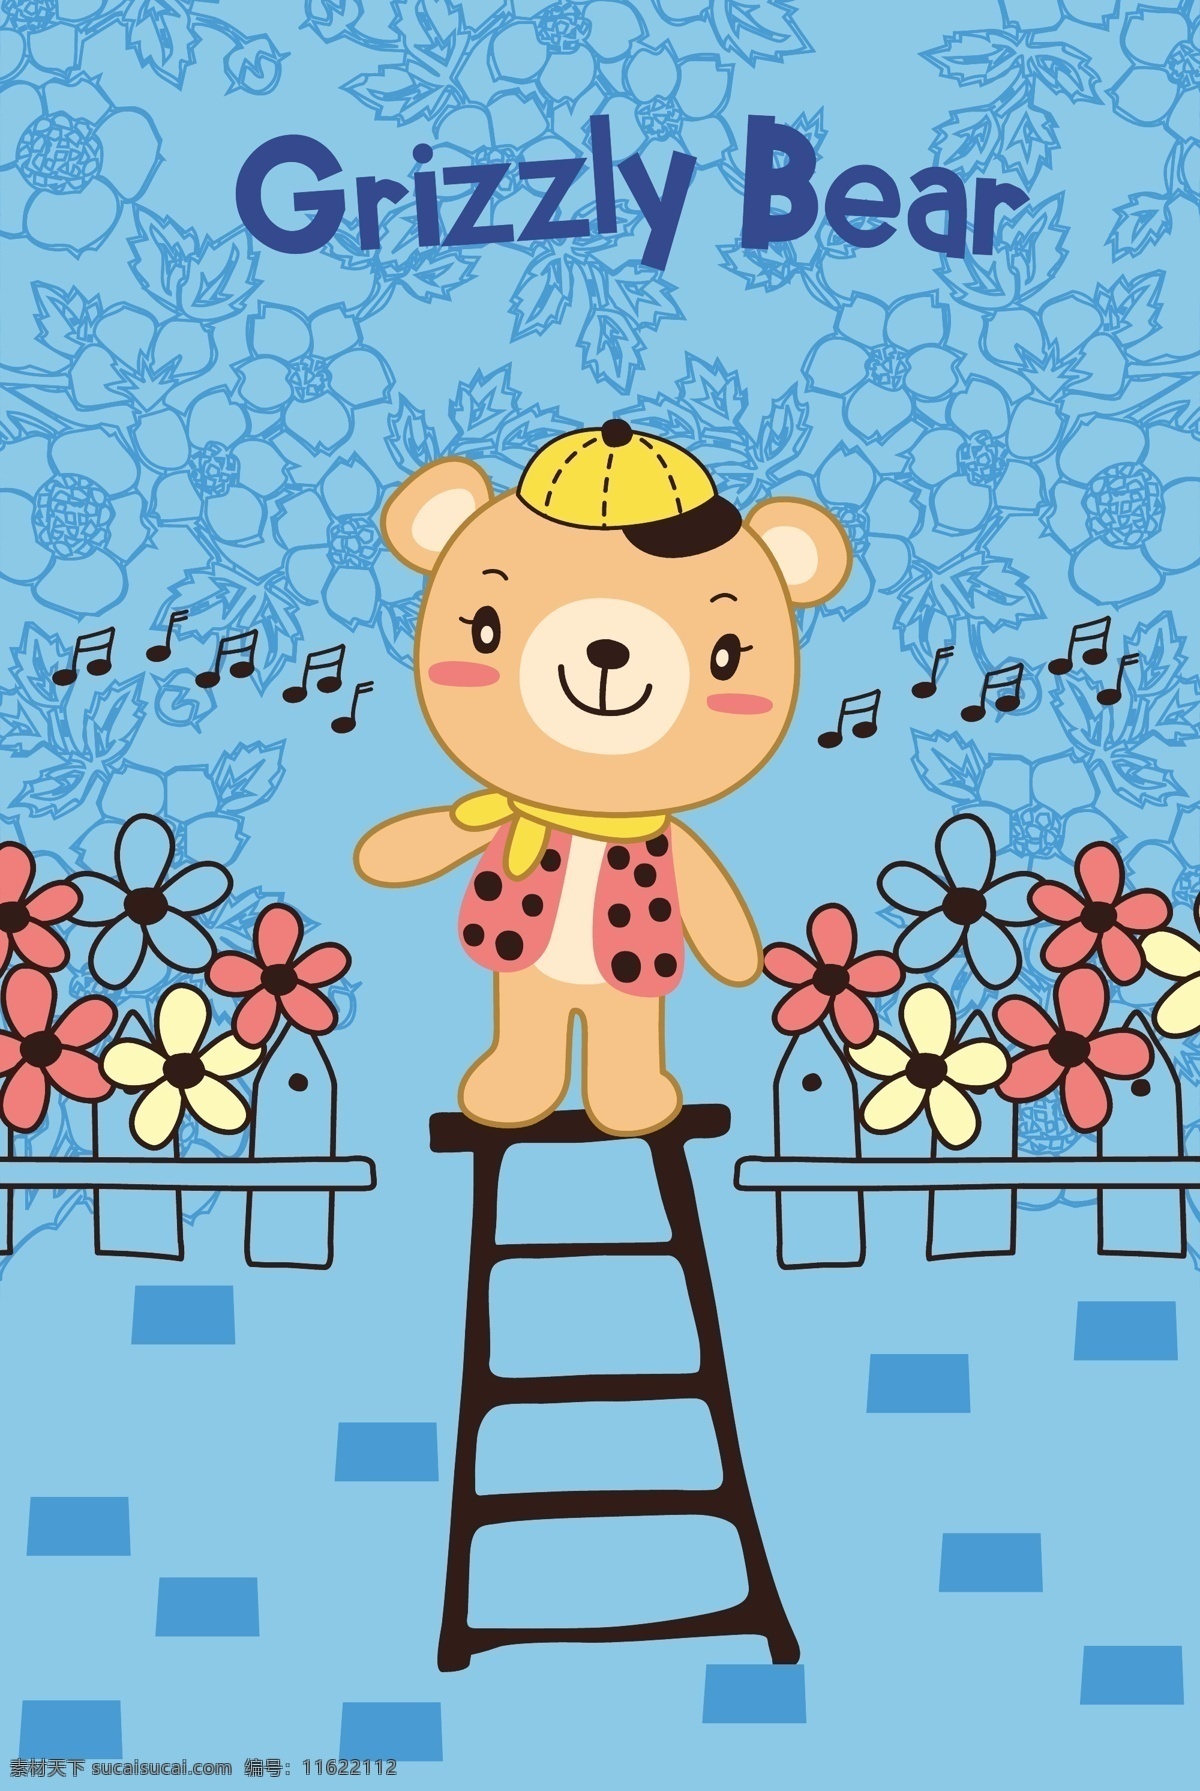 可爱 小 熊 卡通 动物 矢量 楼梯 盆栽 广告 创意设计 矢量素材 源文件 平面设计